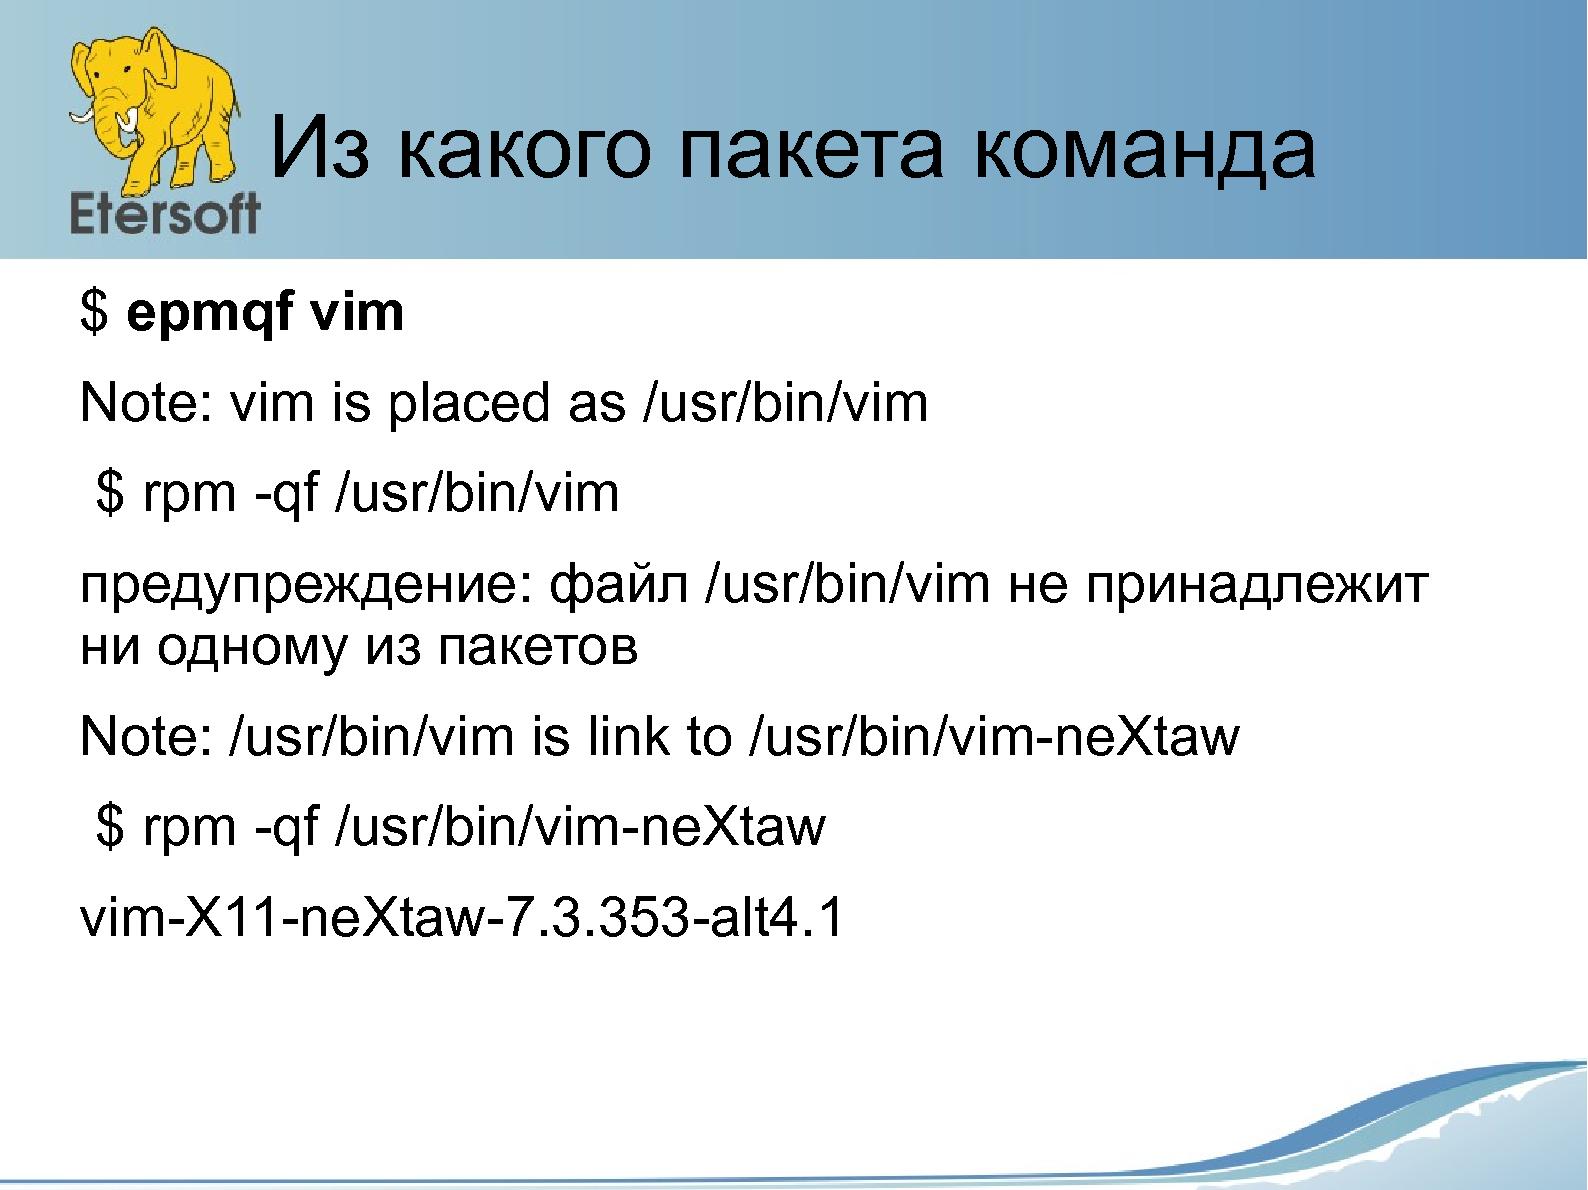 Файл:Утилиты от Etersoft — упрощение с помощью обобщения и не только (Виталий Липатов, OSSDEVCONF-2015).pdf